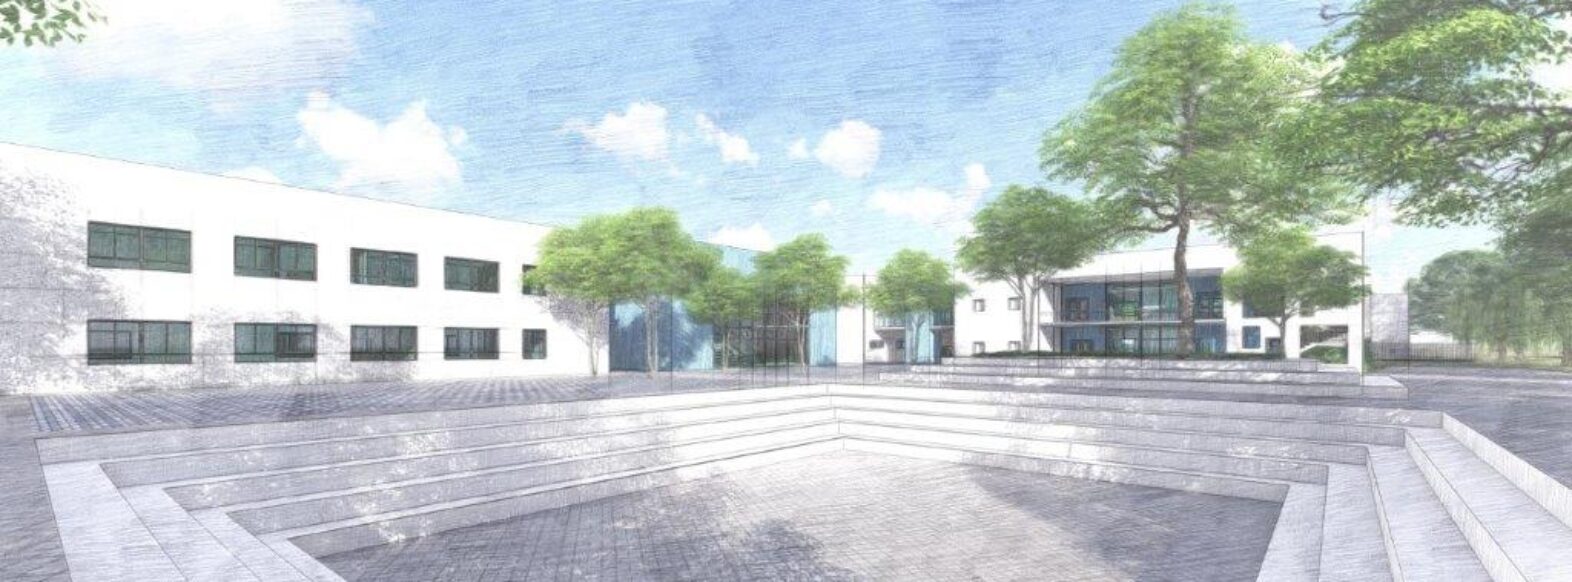 הועדה המחוזית לתכנון ובנייה חיפה אישרה את הקמתו של בית הספר ביאליק במיקומו החדש